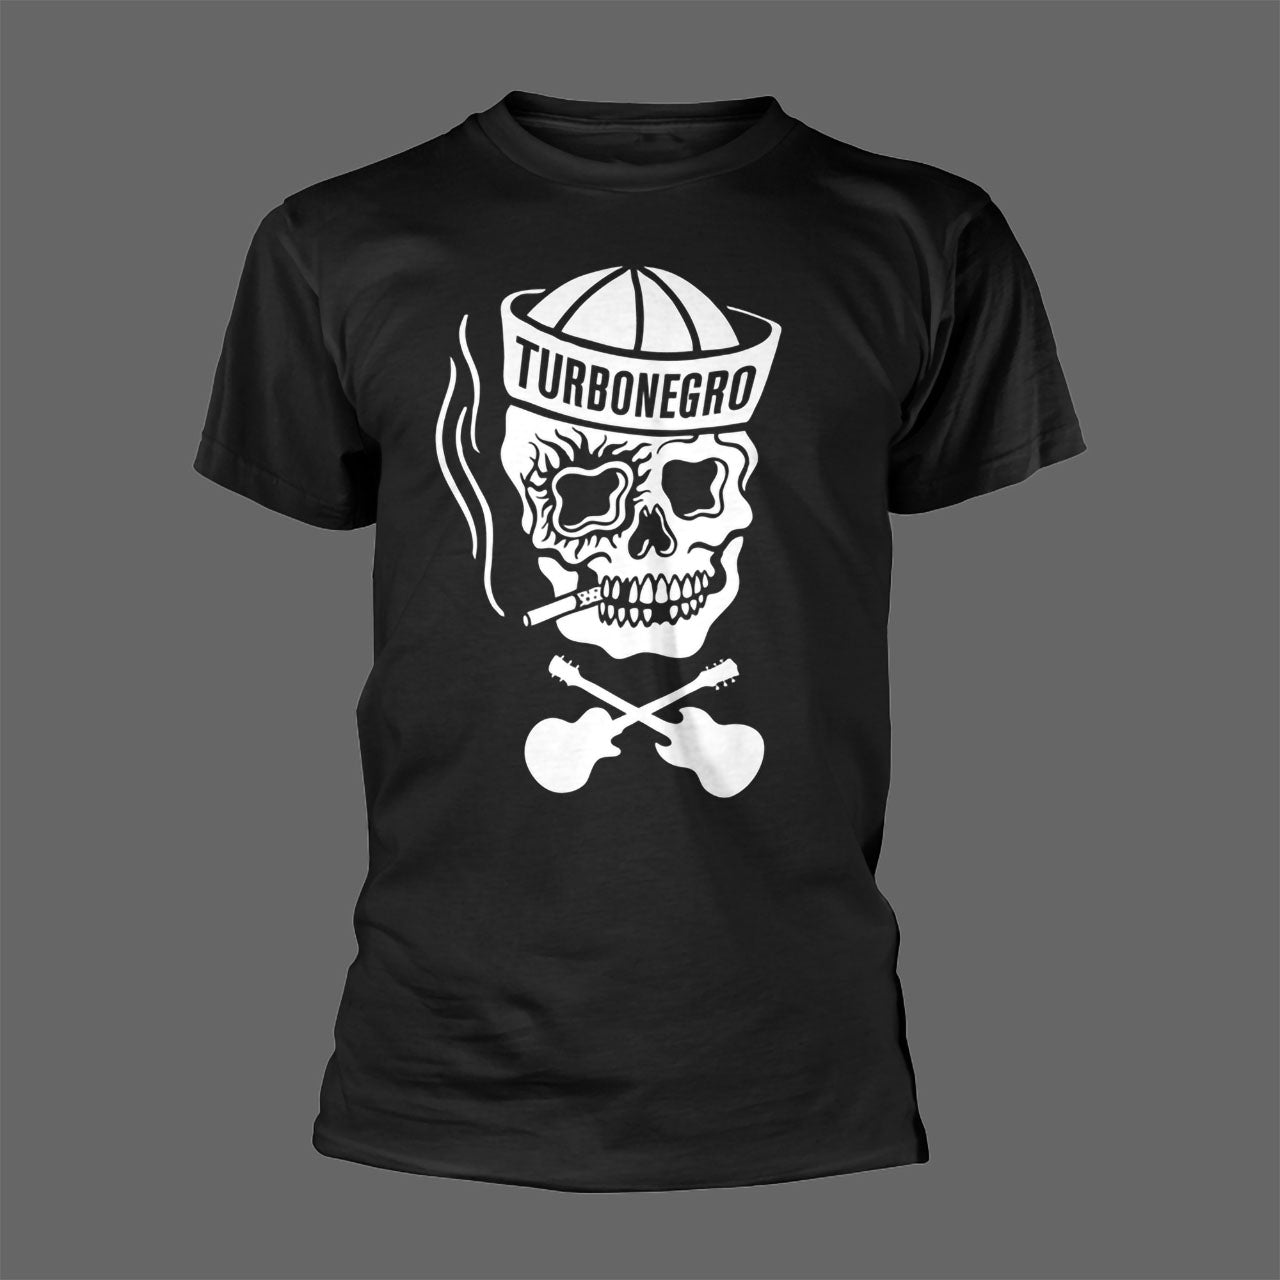 Turbonegro - Sailor (Black) (T-Shirt)